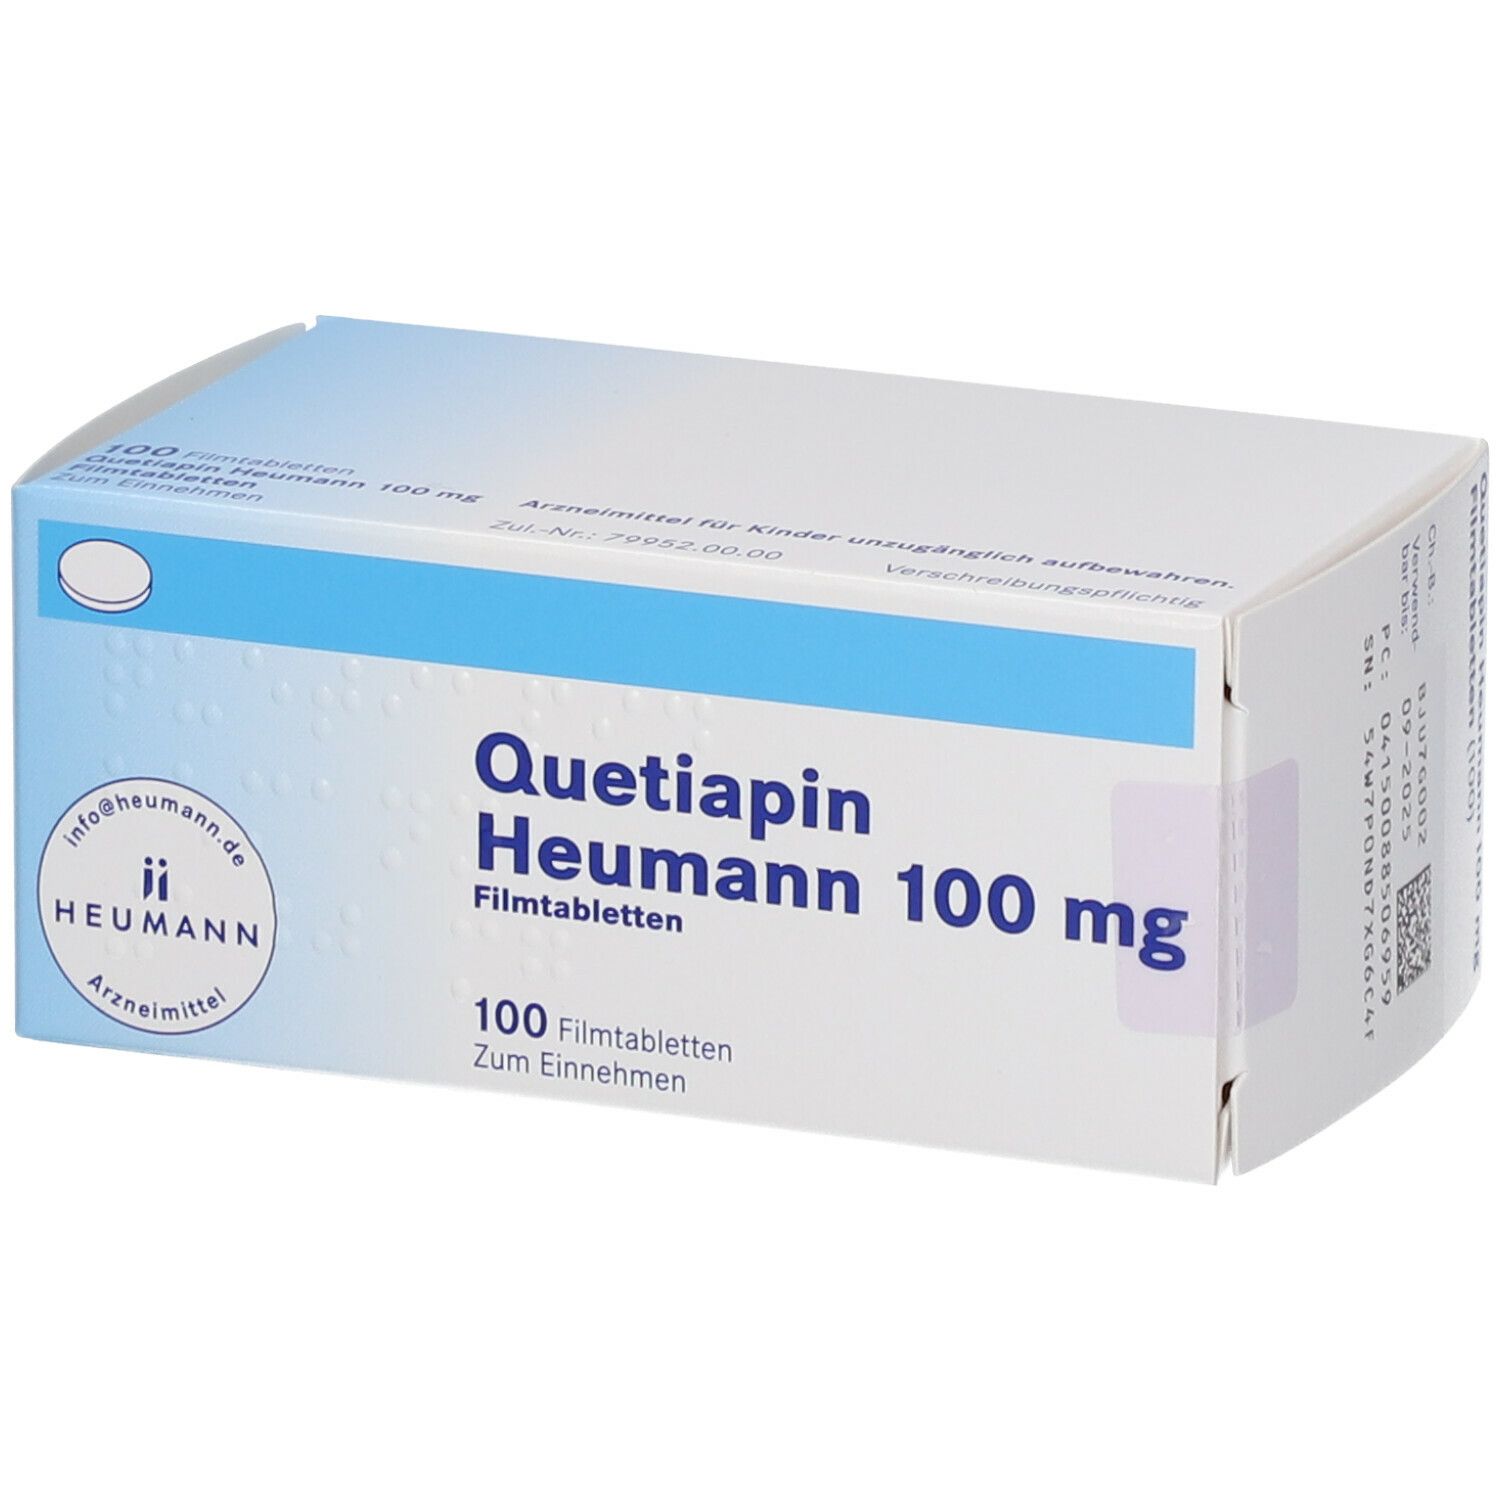 Quetiapin Heumann 100 mg